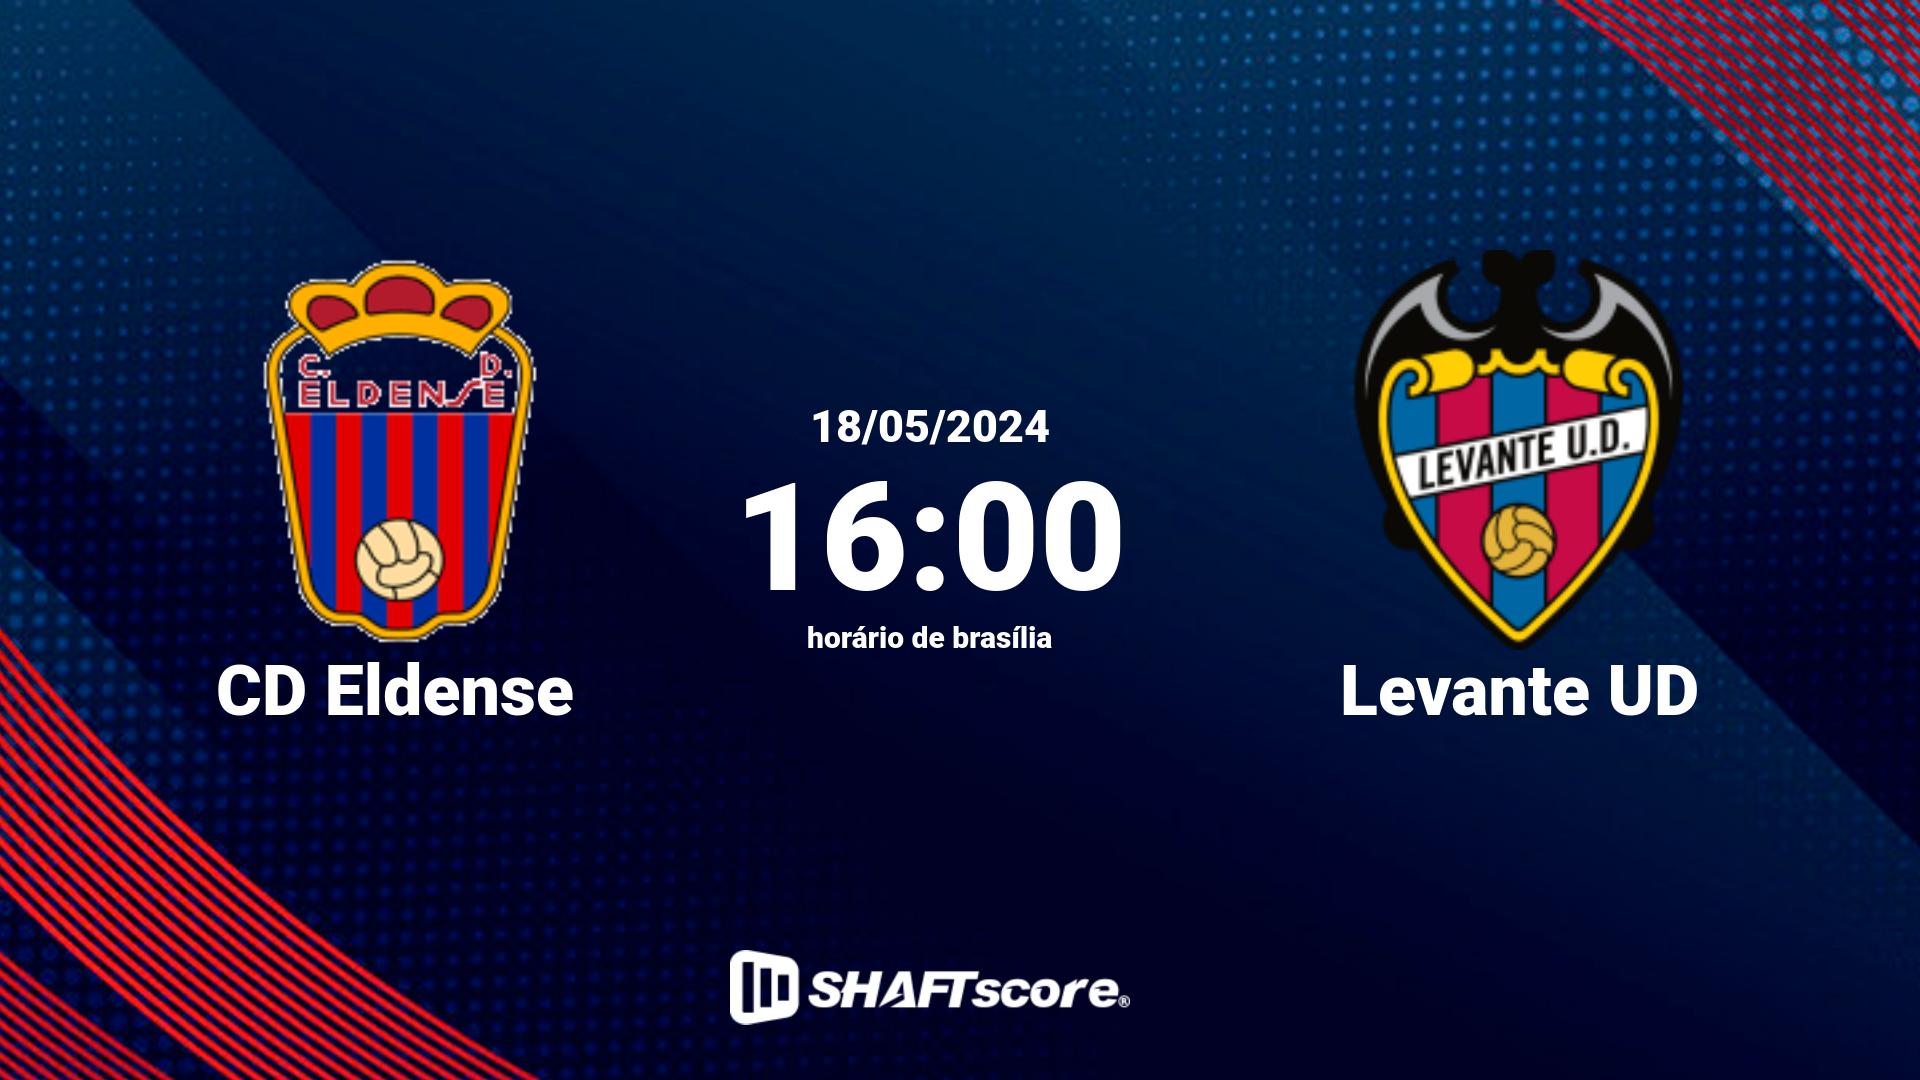 Estatísticas do jogo CD Eldense vs Levante UD 18.05 16:00